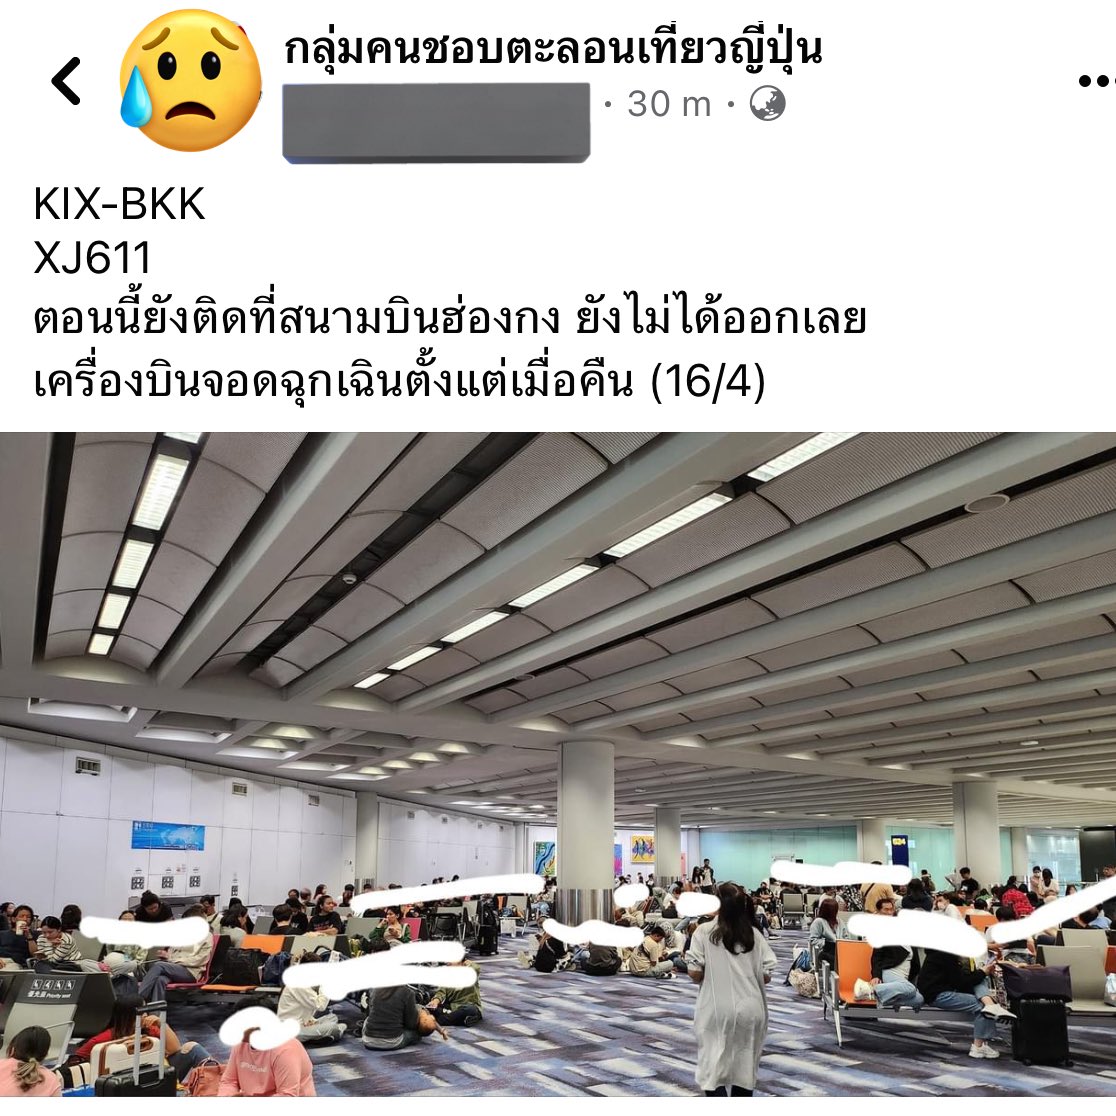 🔴 โหหหหห โหดอยู่เด้อ เครื่องจากโอซาก้า ของ Thai Air Asia X ที่ต้องลงฉุกเฉินที่ฮ่องกงตั้งแต่เมื่อคืน จนถึง 4 โมงเย็นวันนี้ เห็นคนโพสต์ว่ายังไม่ได้บินกลับไทยกันเลย 😳😳😳